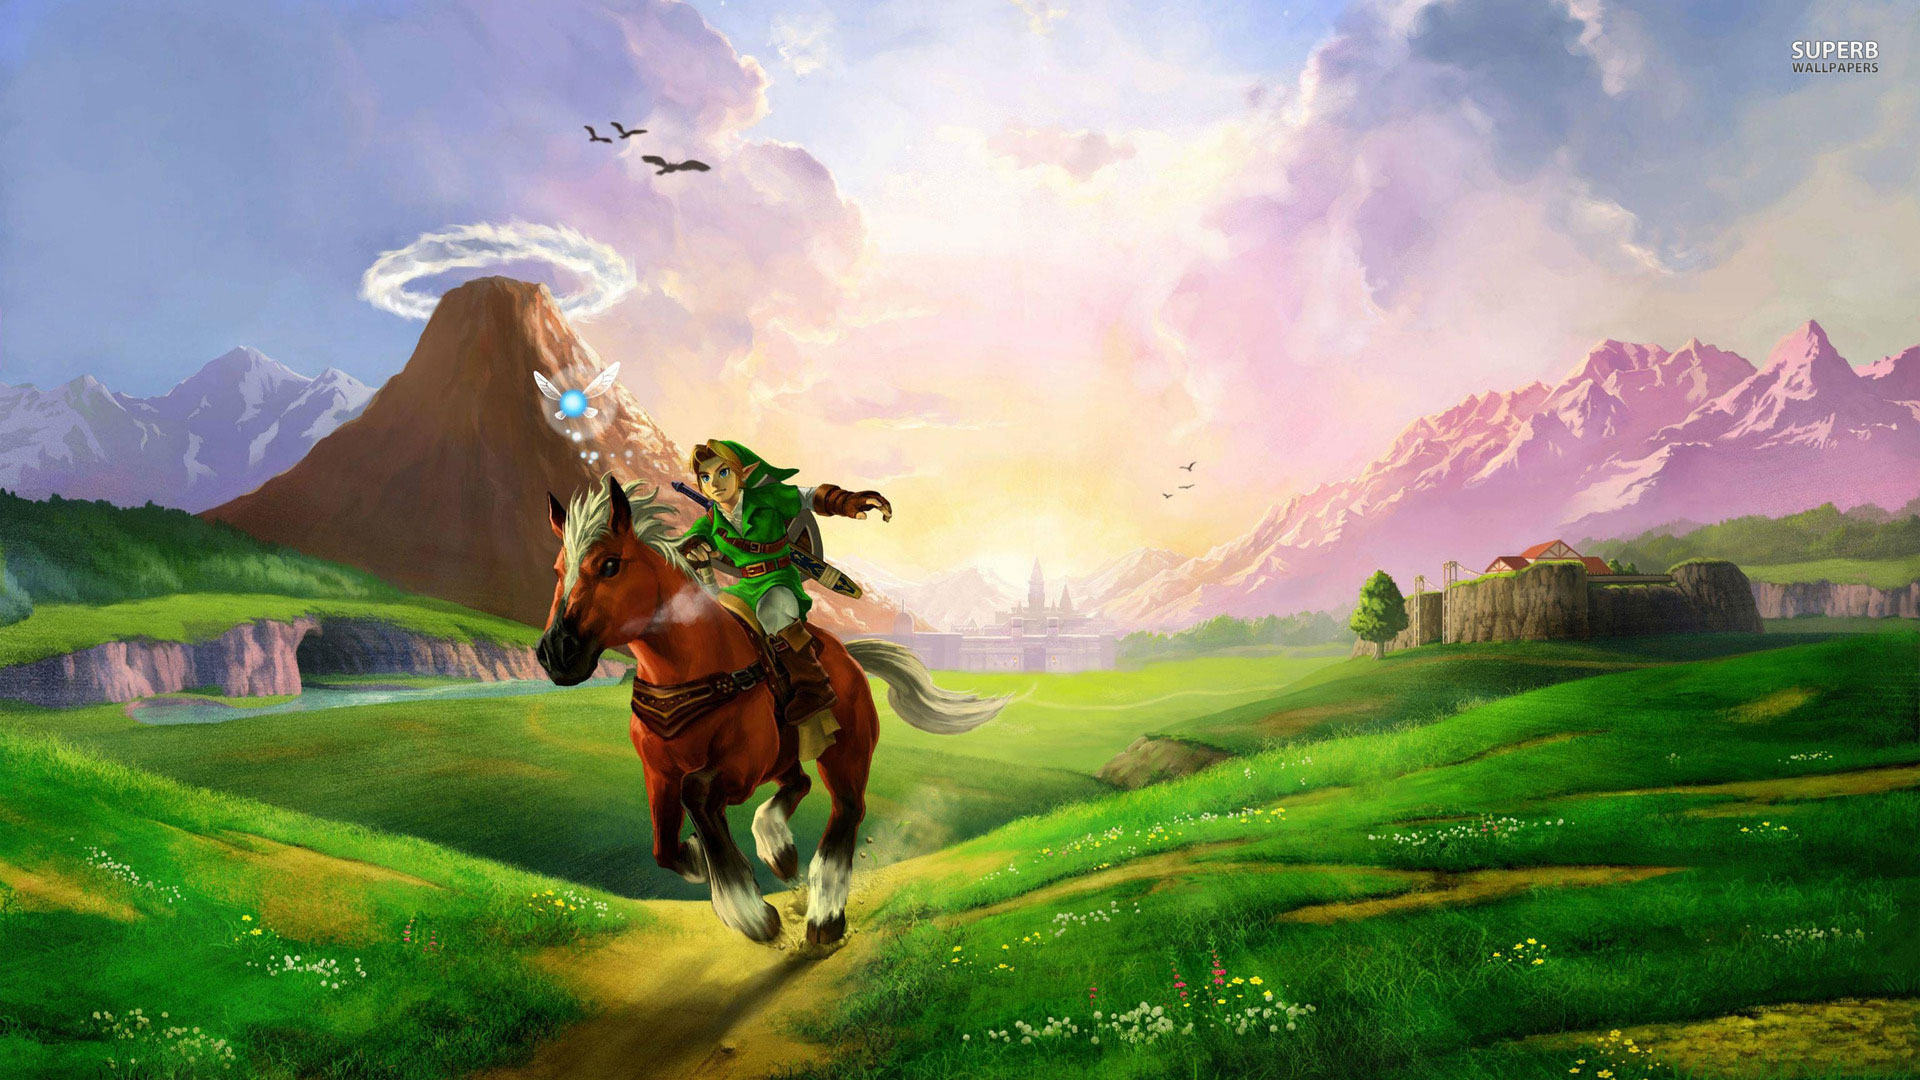 The Legend of Zelda Twilight Princess HD Wallpapers in